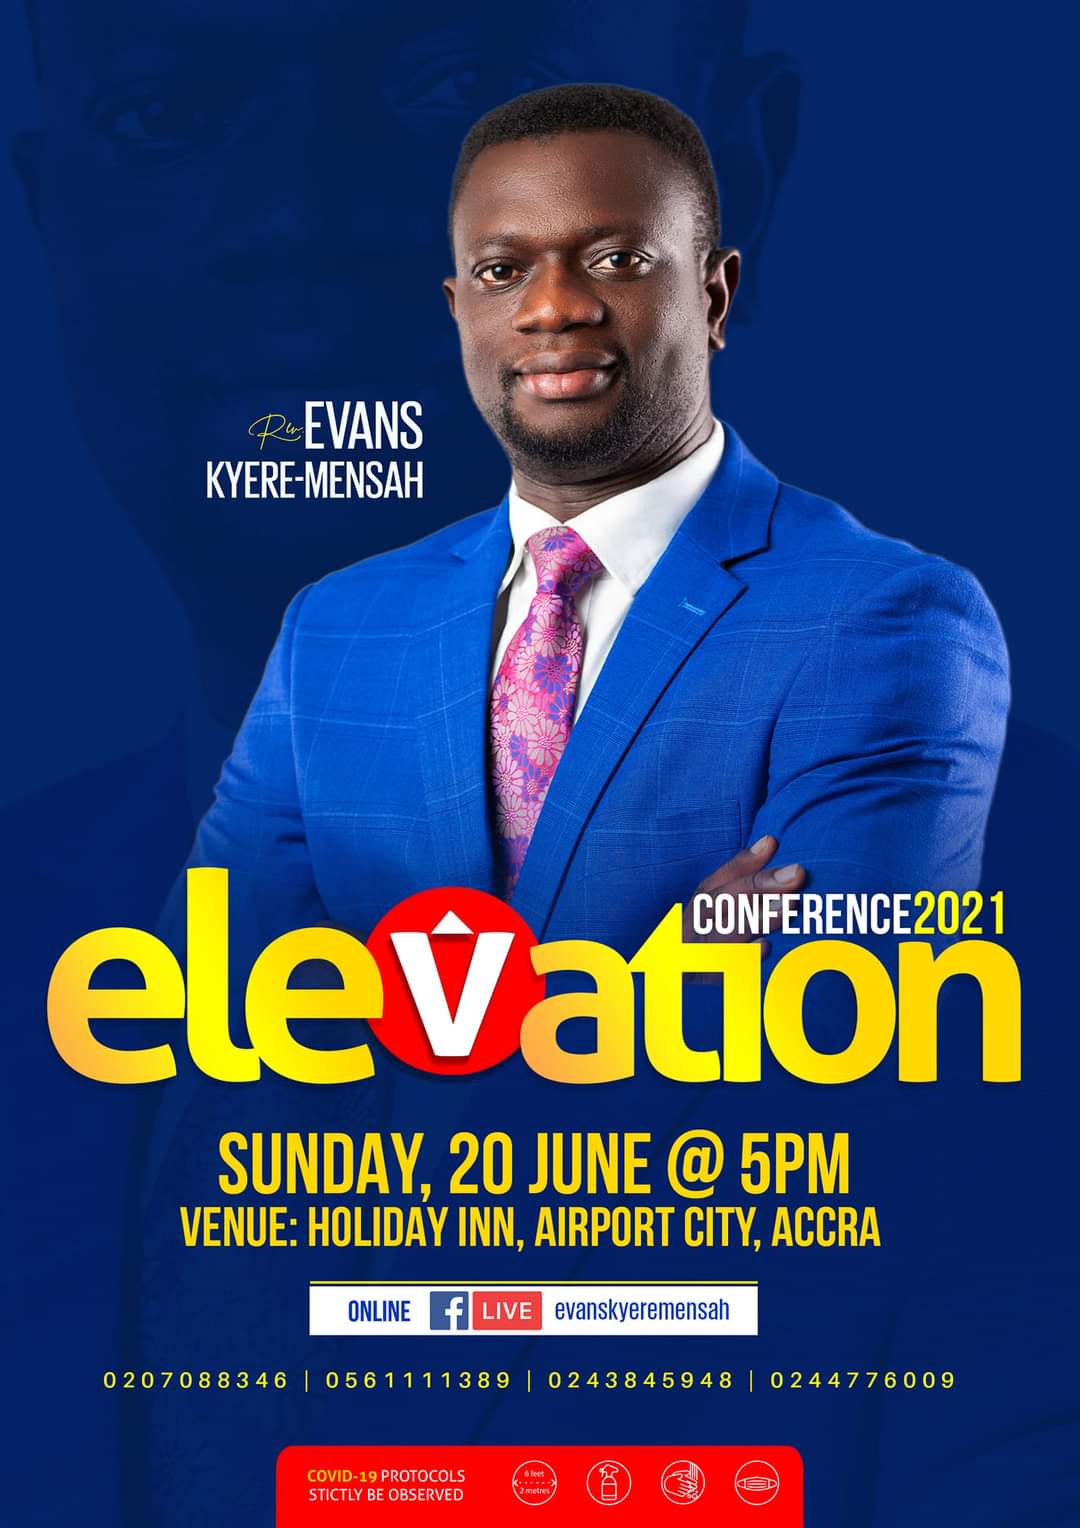 Elevation Conference 2021 slated for June 20